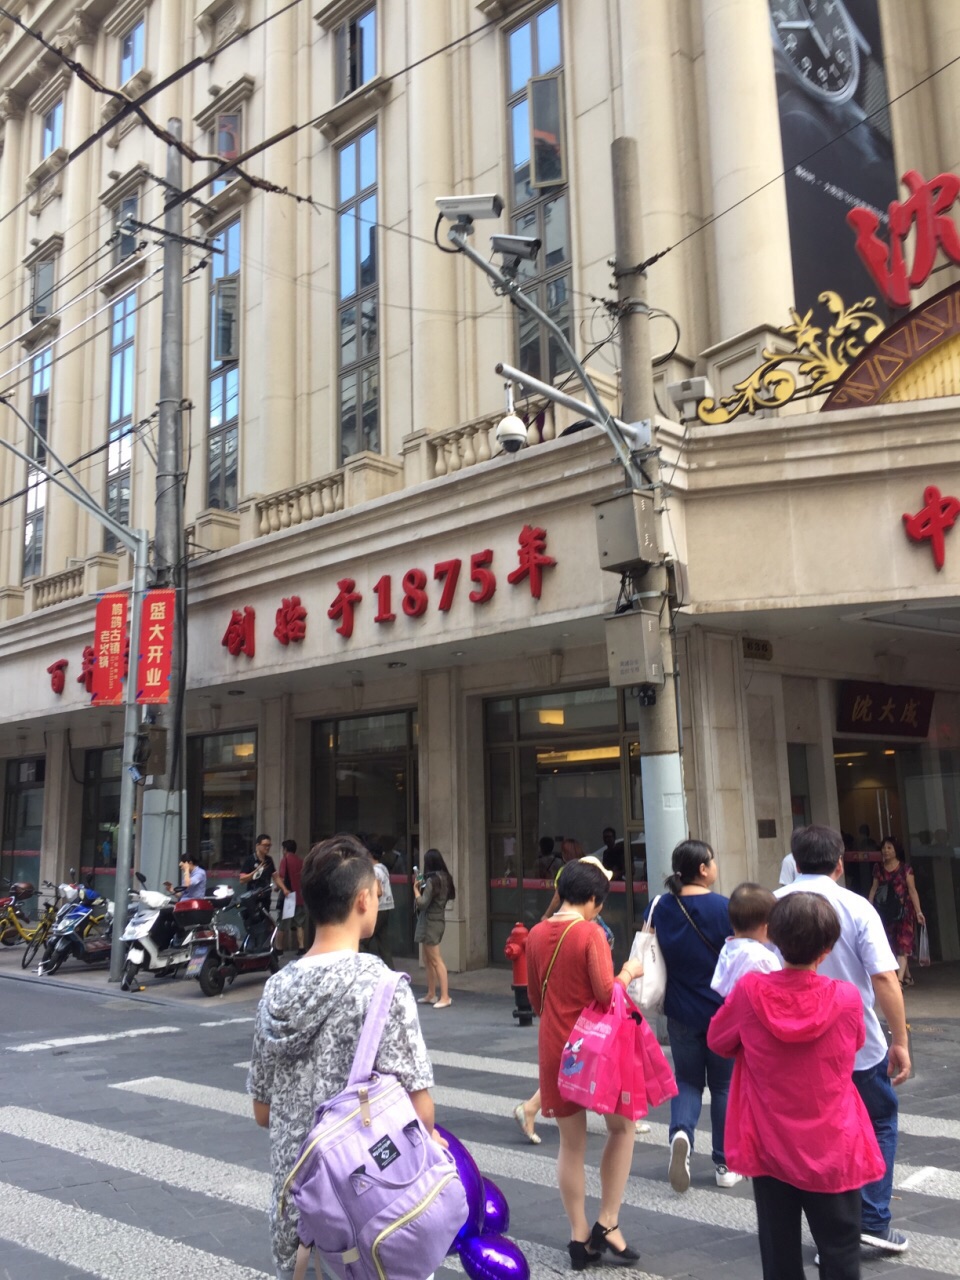 【携程美食林】上海沈大成(南京东路店)餐馆,沈大成是百年老店了,算是